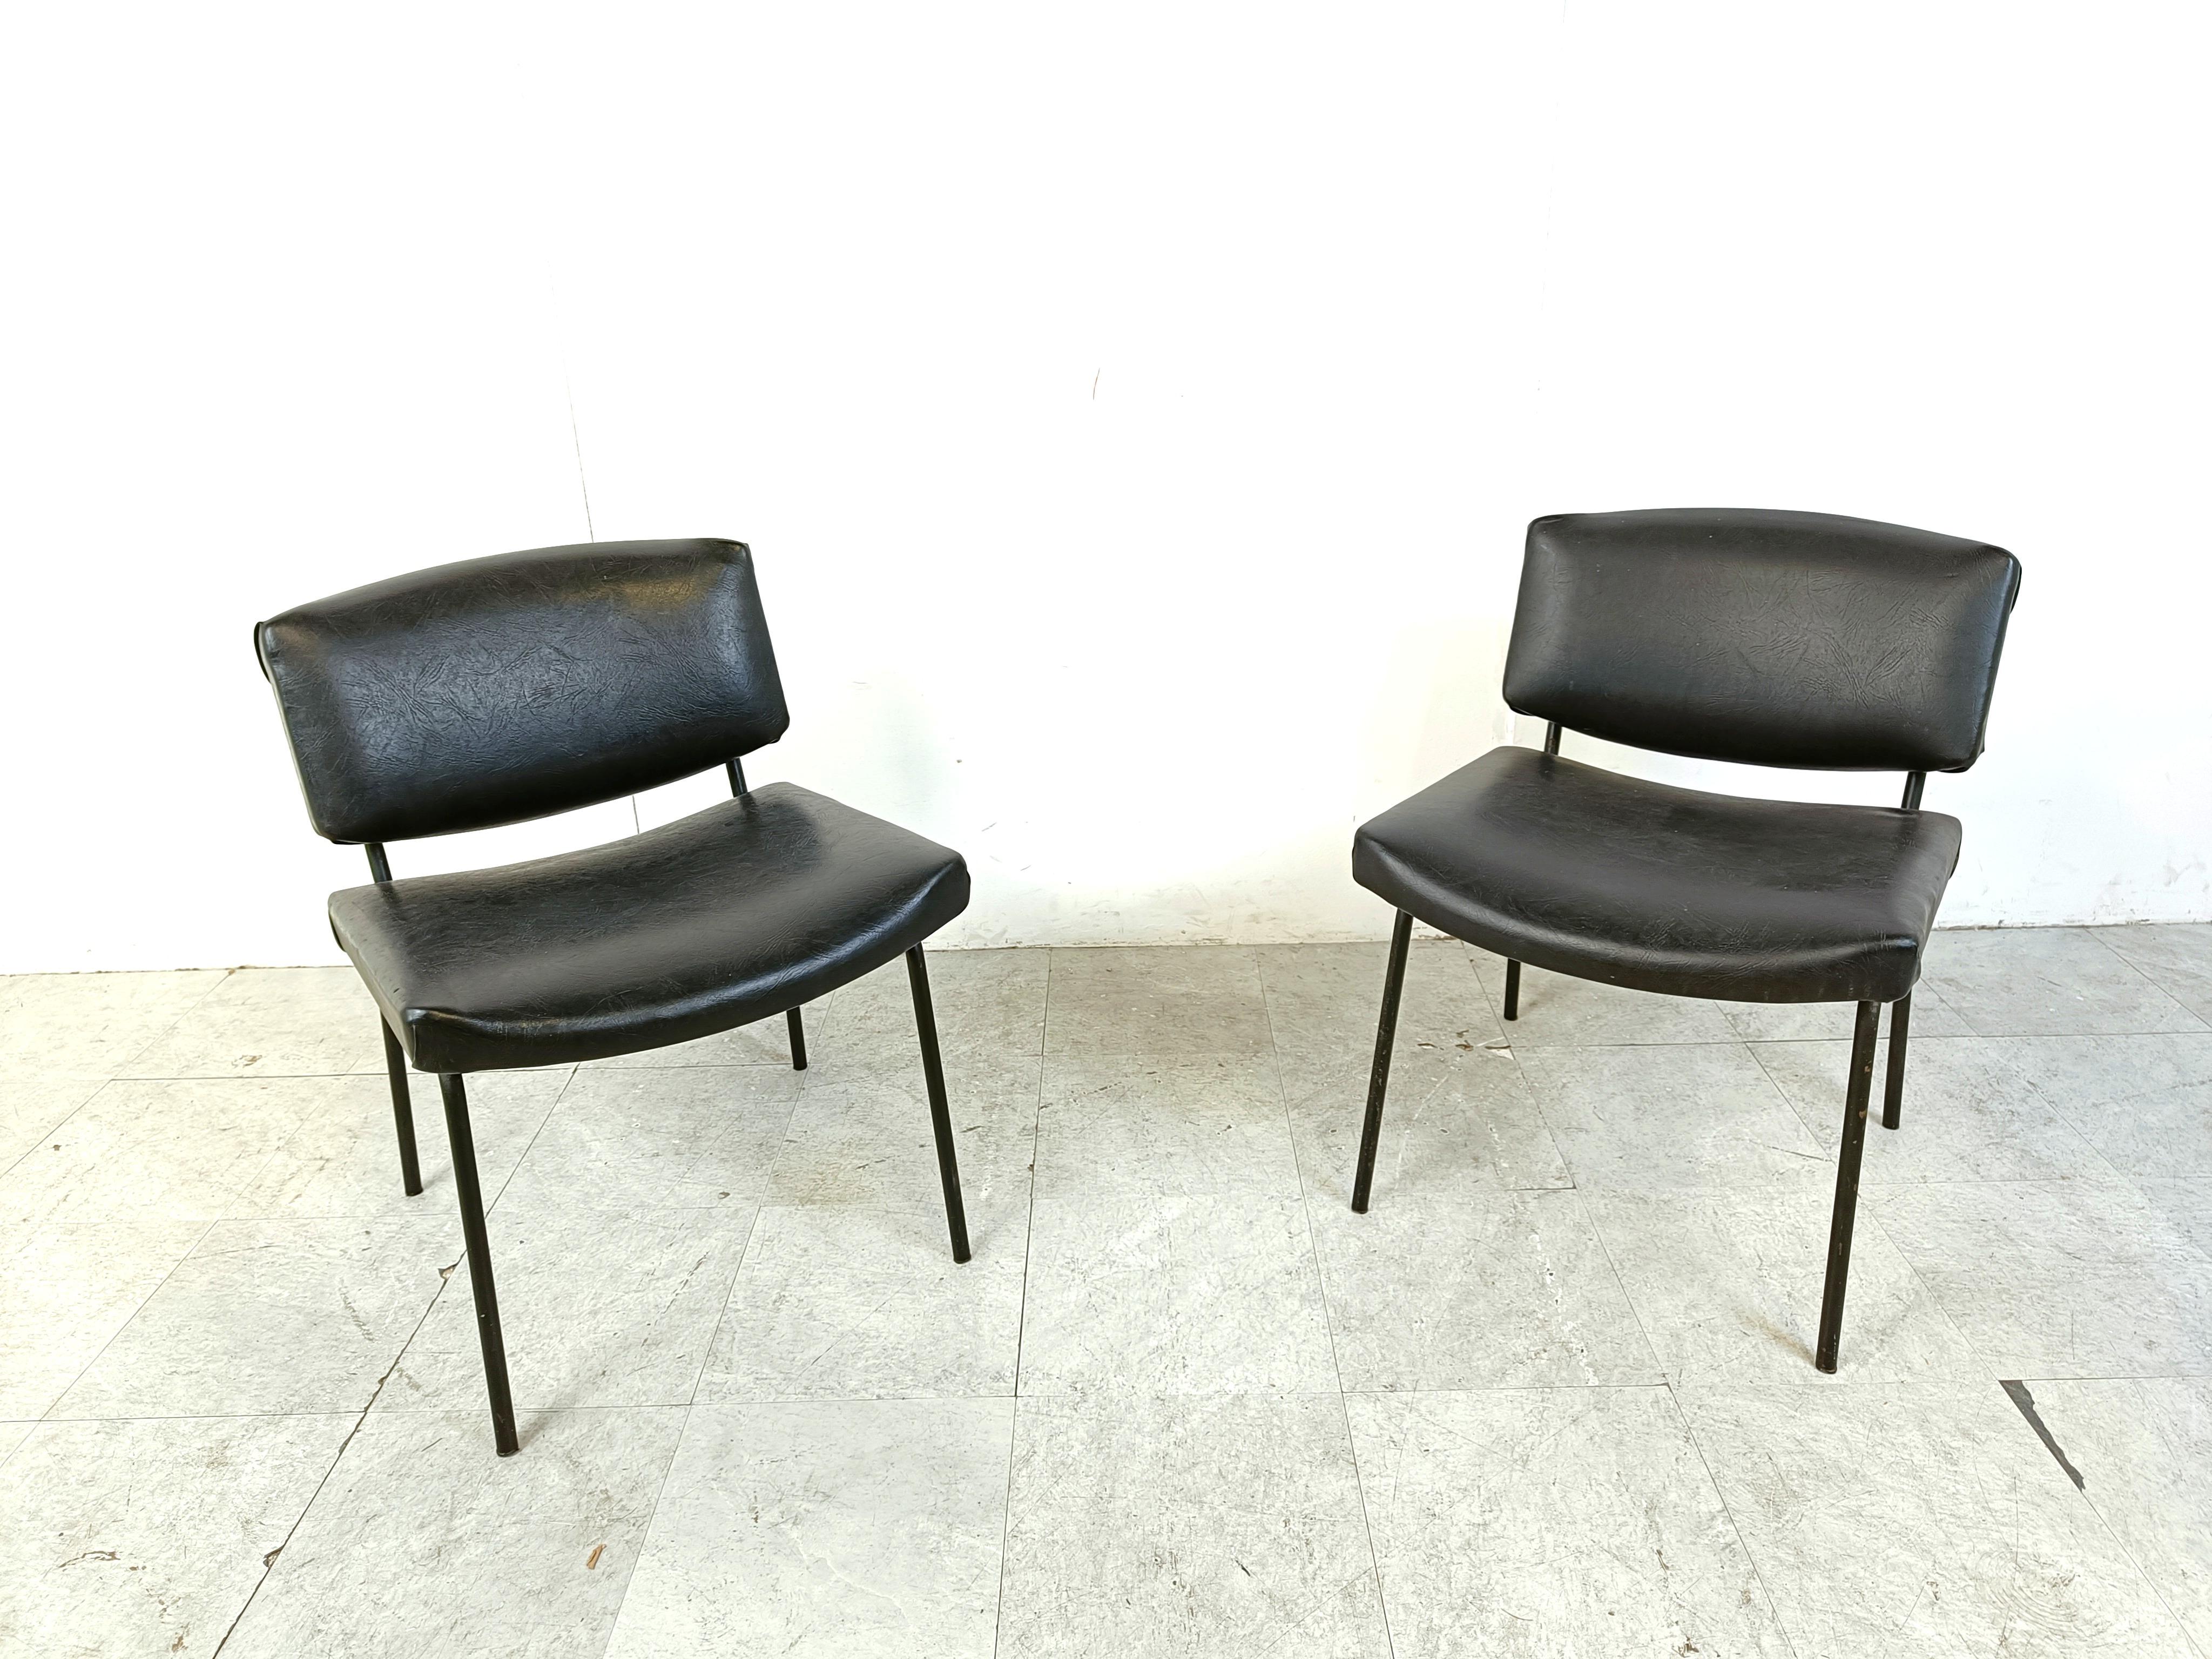 Ensemble de deux chaises 'conseil' de style moderne du milieu du siècle dernier, conçues par Pierre Guariche pour Meurop.

Les chaises ont un cadre laqué noir et sont revêtues de leur simili-cuir ou de leur skaï noir d'origine. 

Les chaises sont en